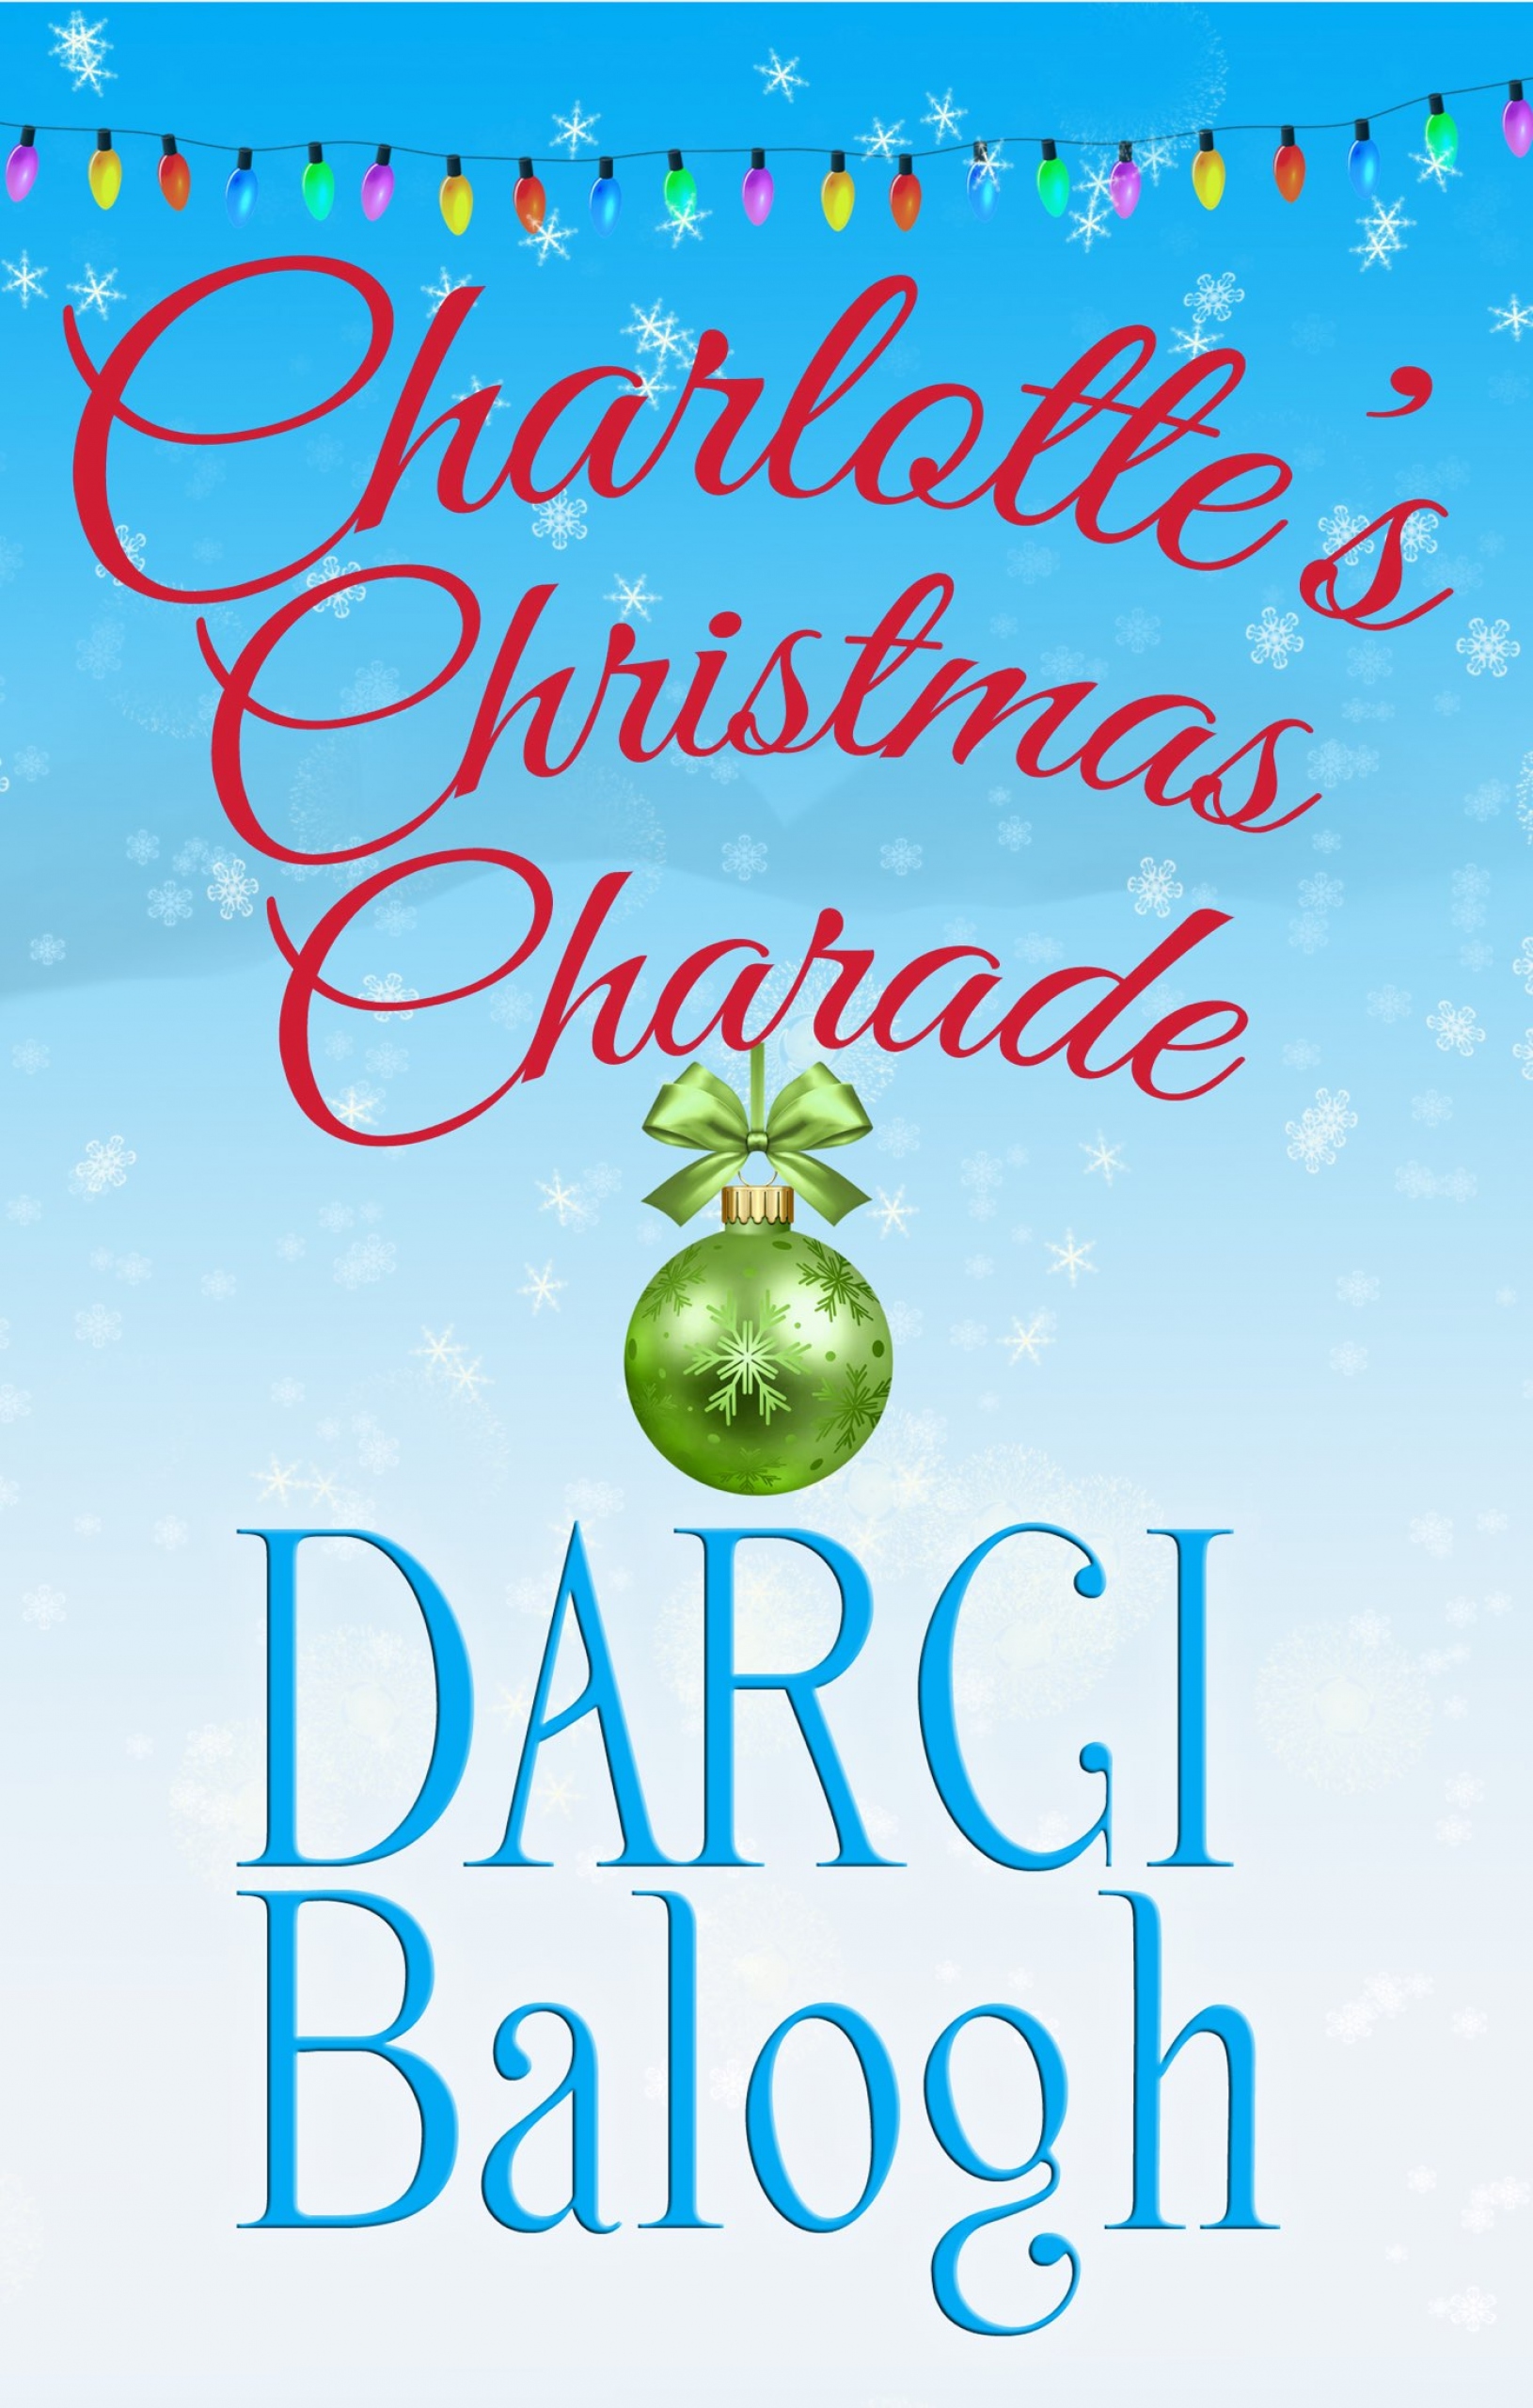 Charlotte"s Christmas Charade